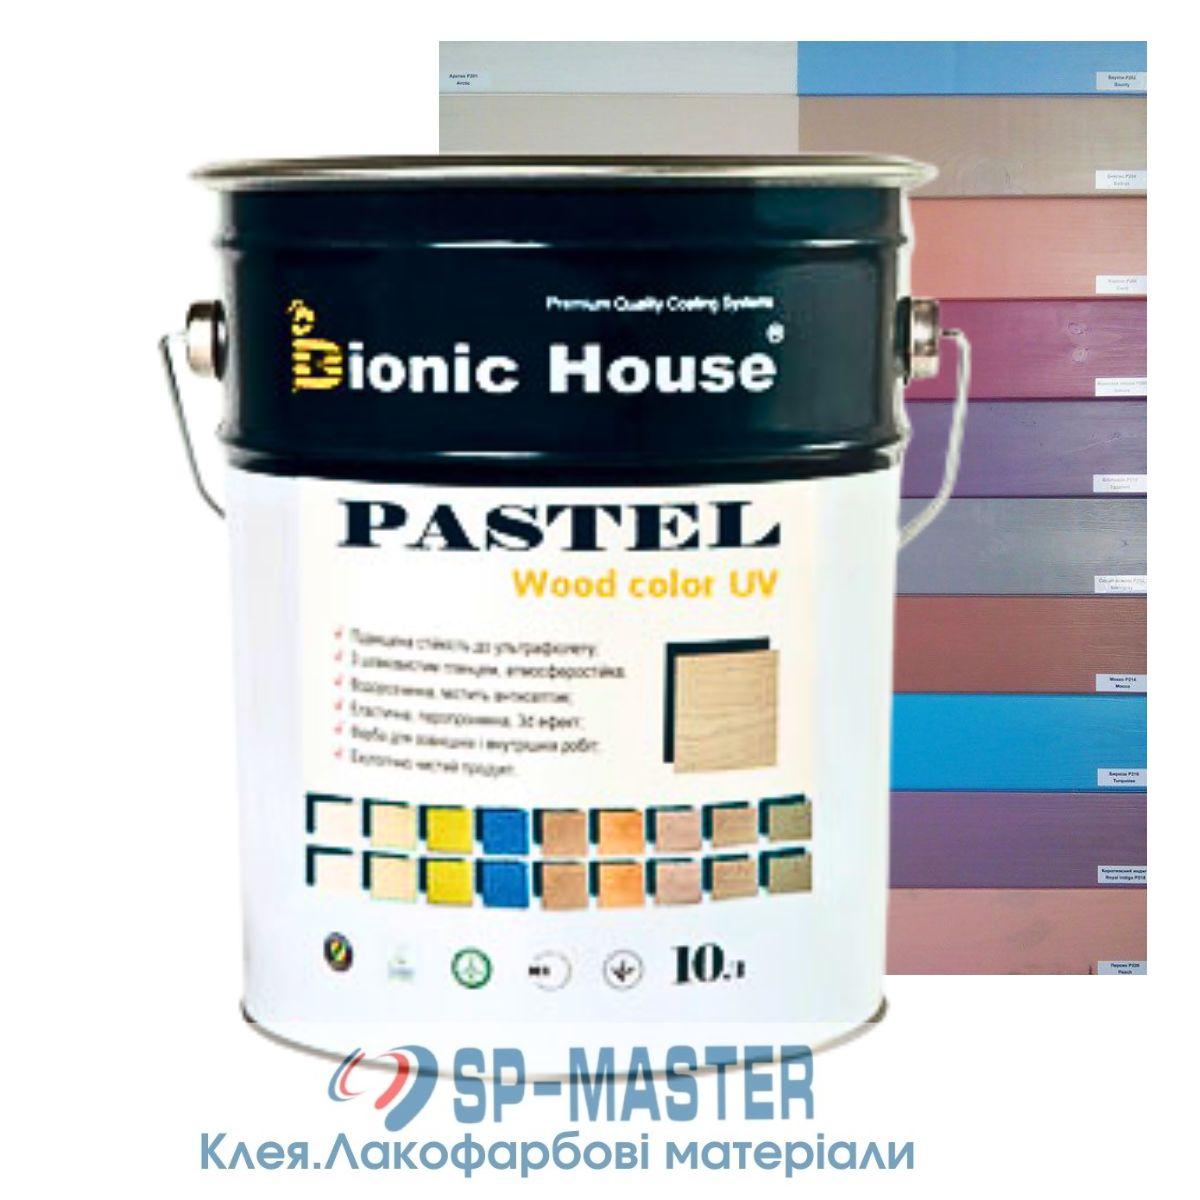 Фарба для дерева укривна, лазур для дерев'яного фасаду "Pastel Wood Color" 10л Bionic House (Біонік Хаус)